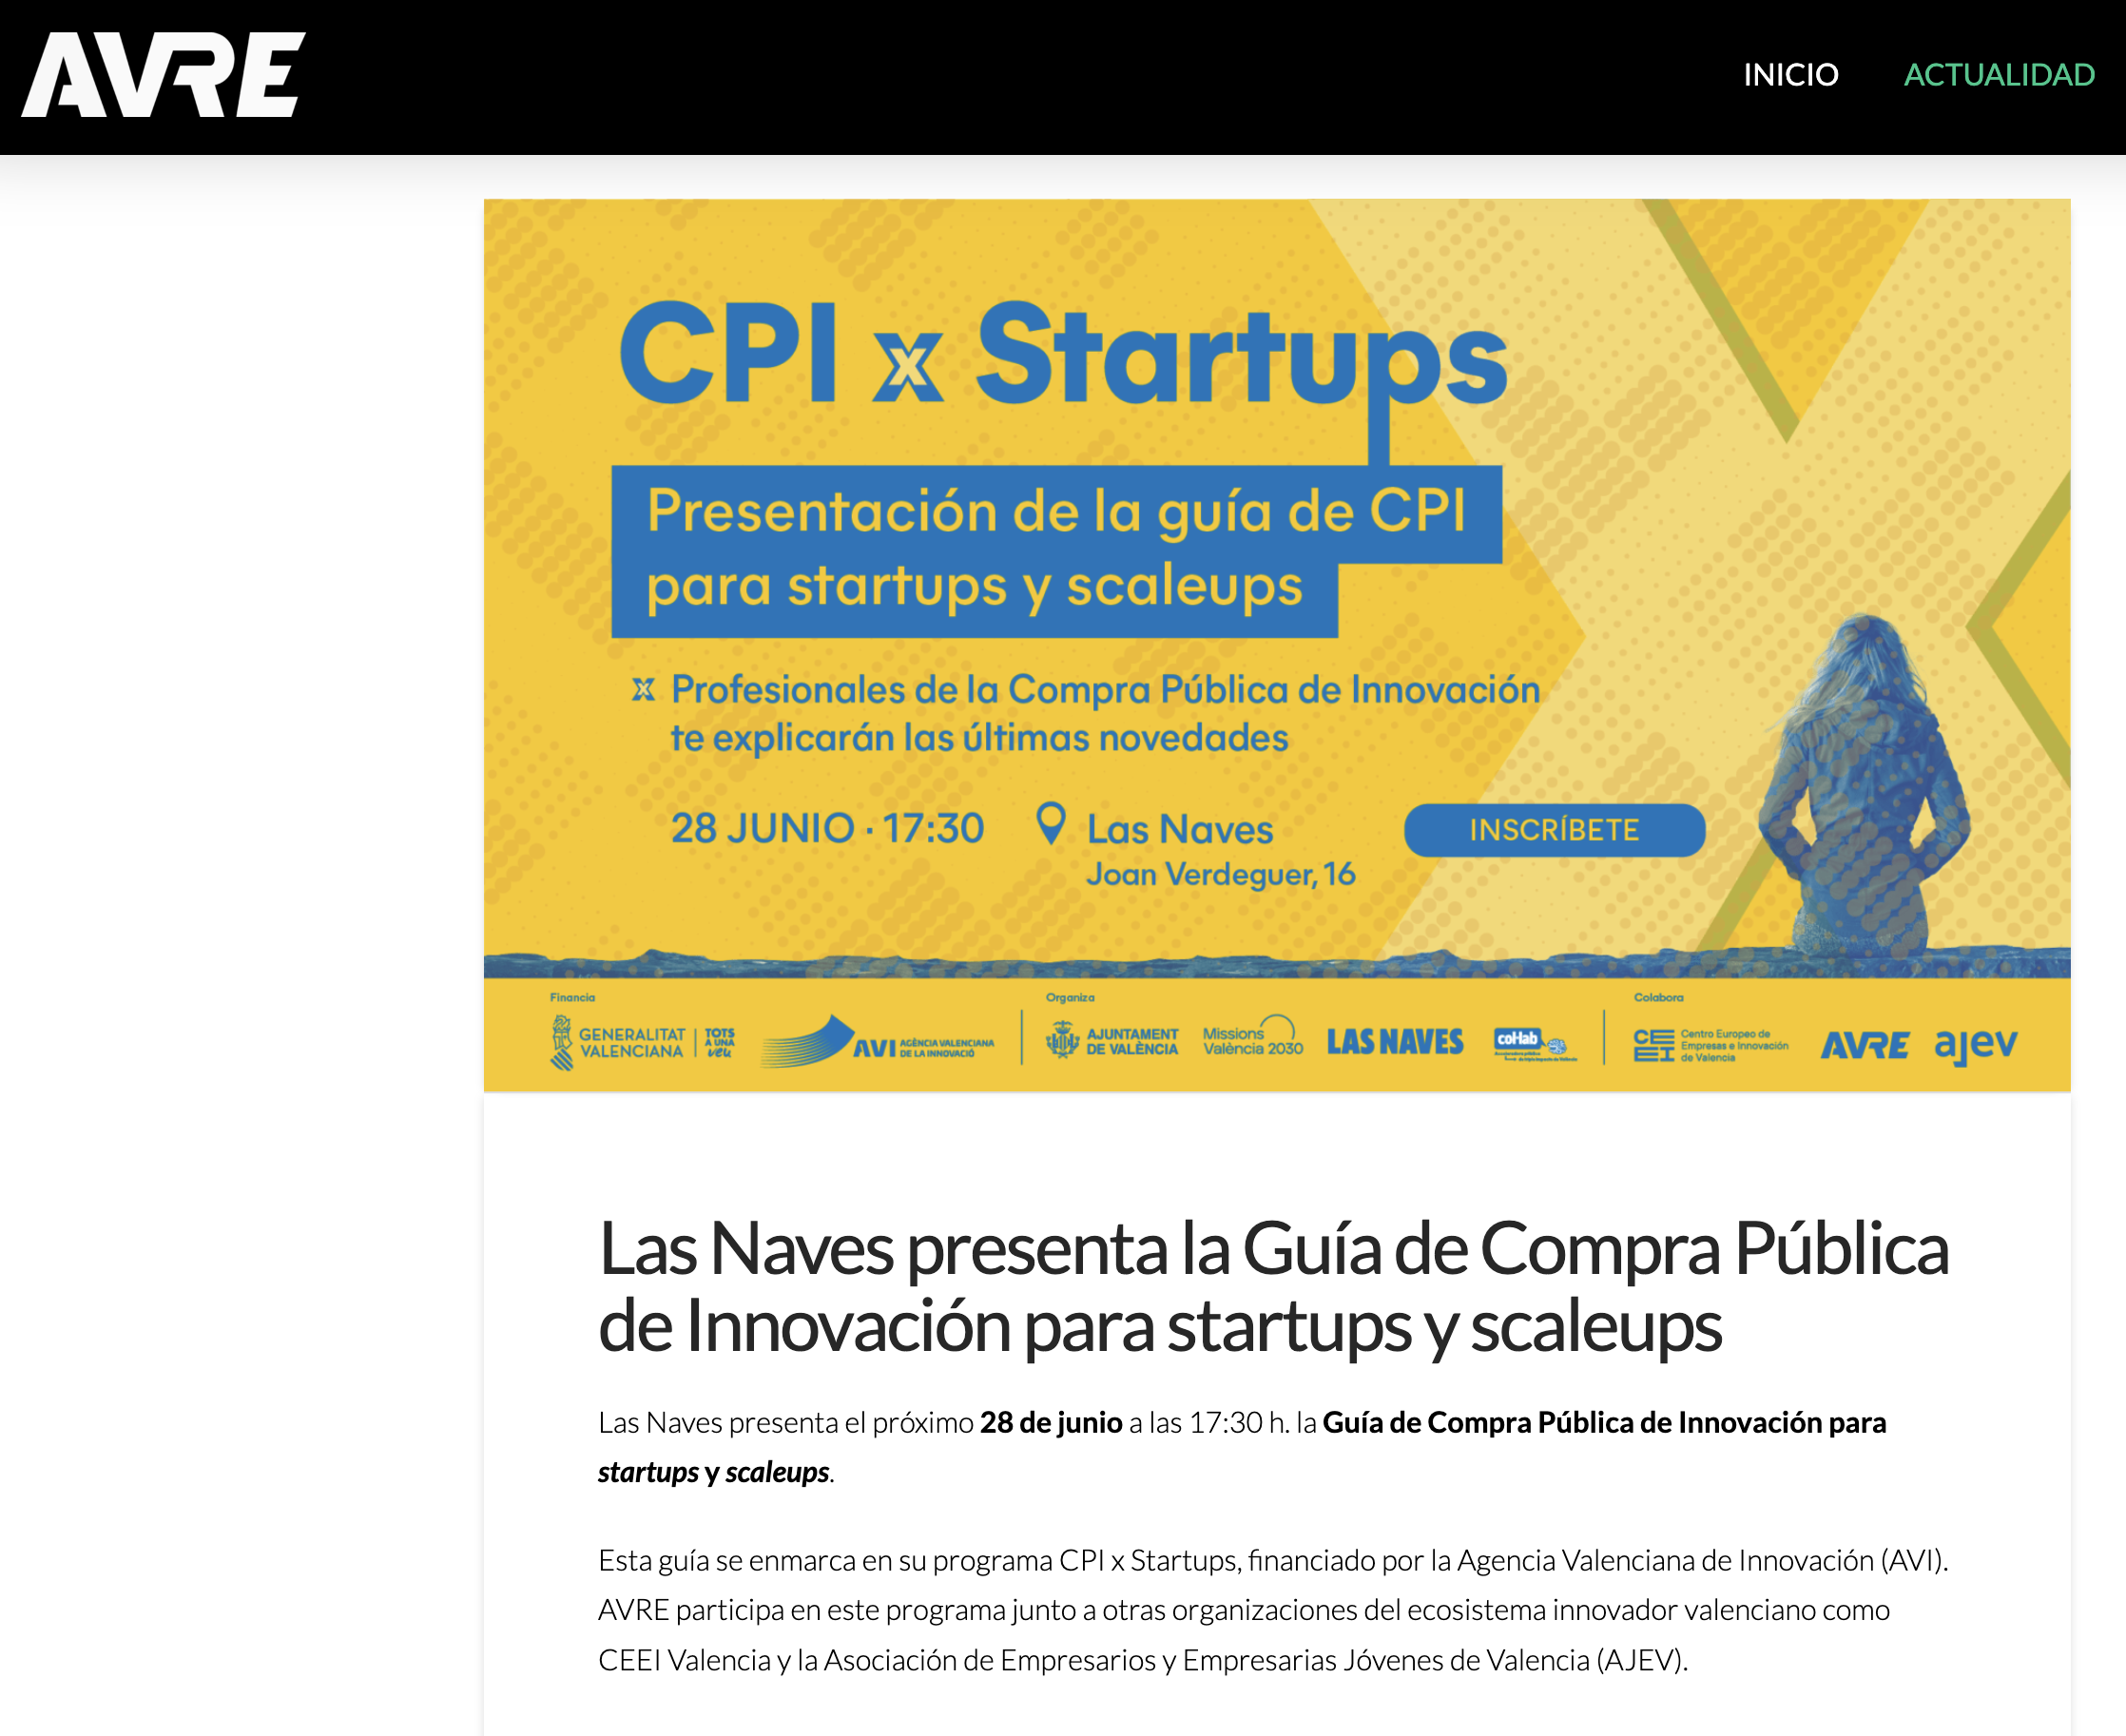 Las Naves presenta la Guía de Compra Pública de Innovación para startups y scaleups